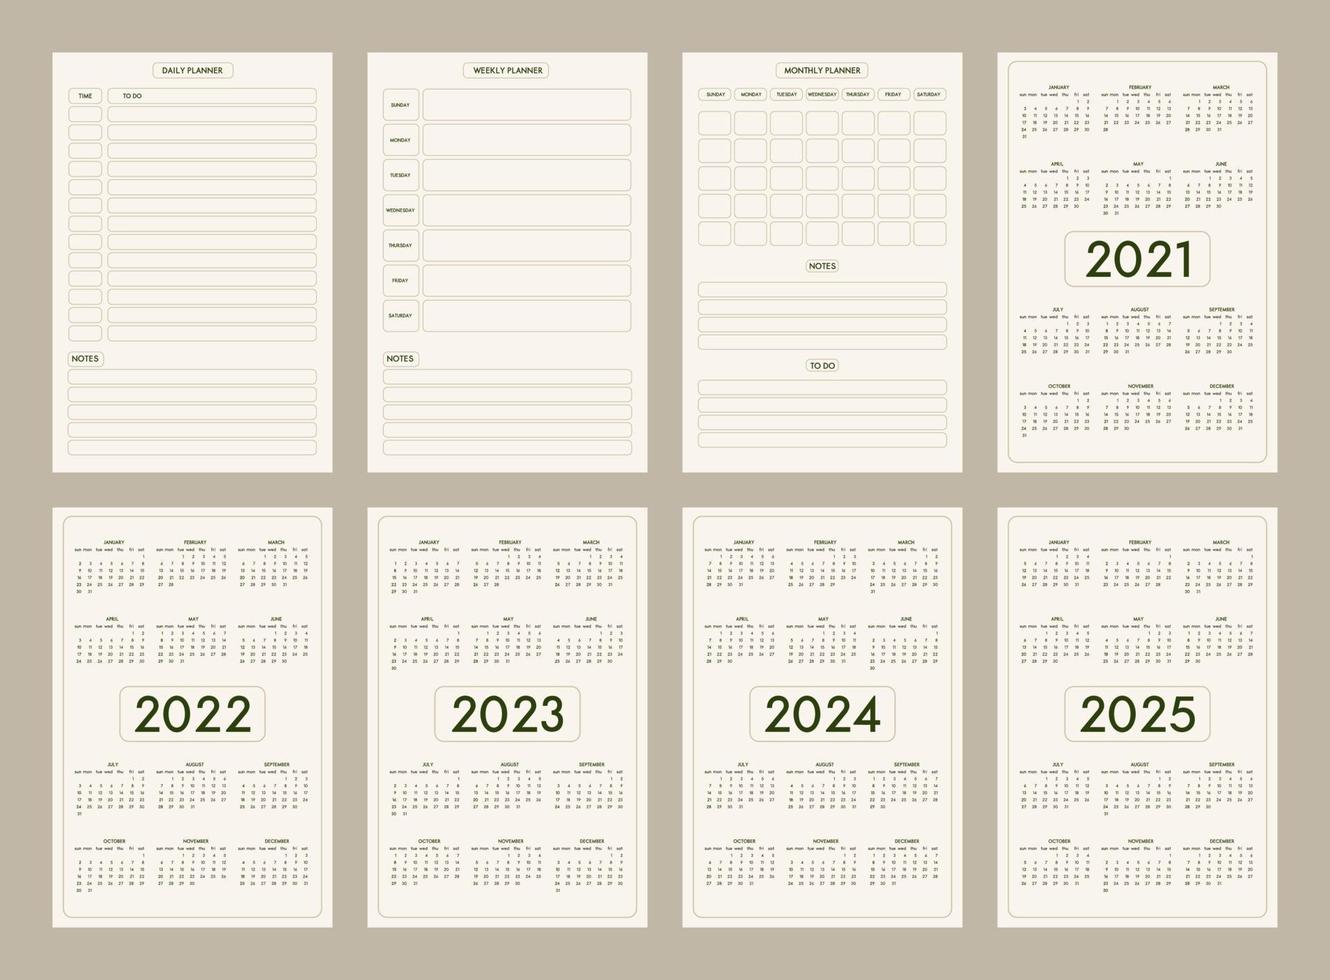 2022 2023 2024 2025 Kalender täglich wöchentlich monatlich persönlicher Planer Tagebuch Vorlage minimalistischer trendiger Stil, pastellbeige olivfarbene natürliche Farbpalette. Woche beginnt am Sonntag vektor